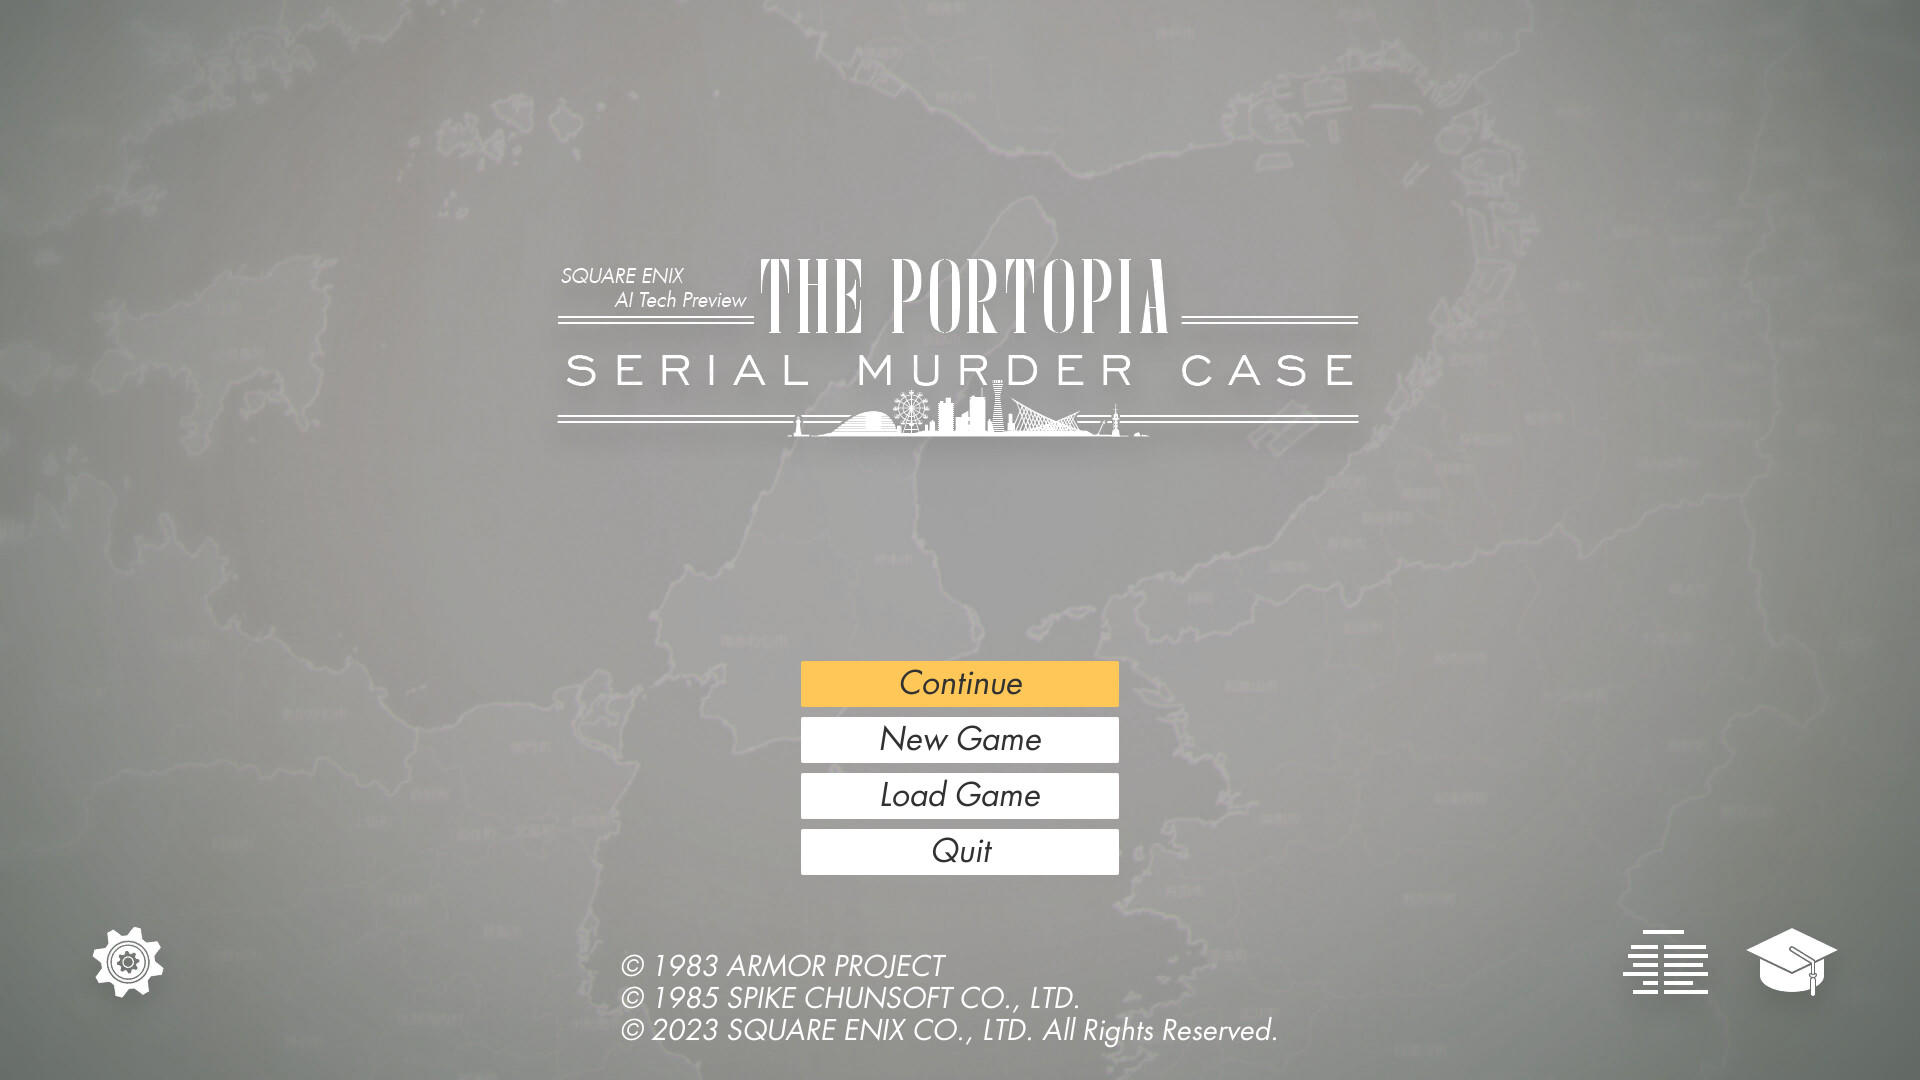 SQUARE ENIX AI Tech Preview: THE PORTOPIA SERIAL MURDER CASE 게임 스크린 샷